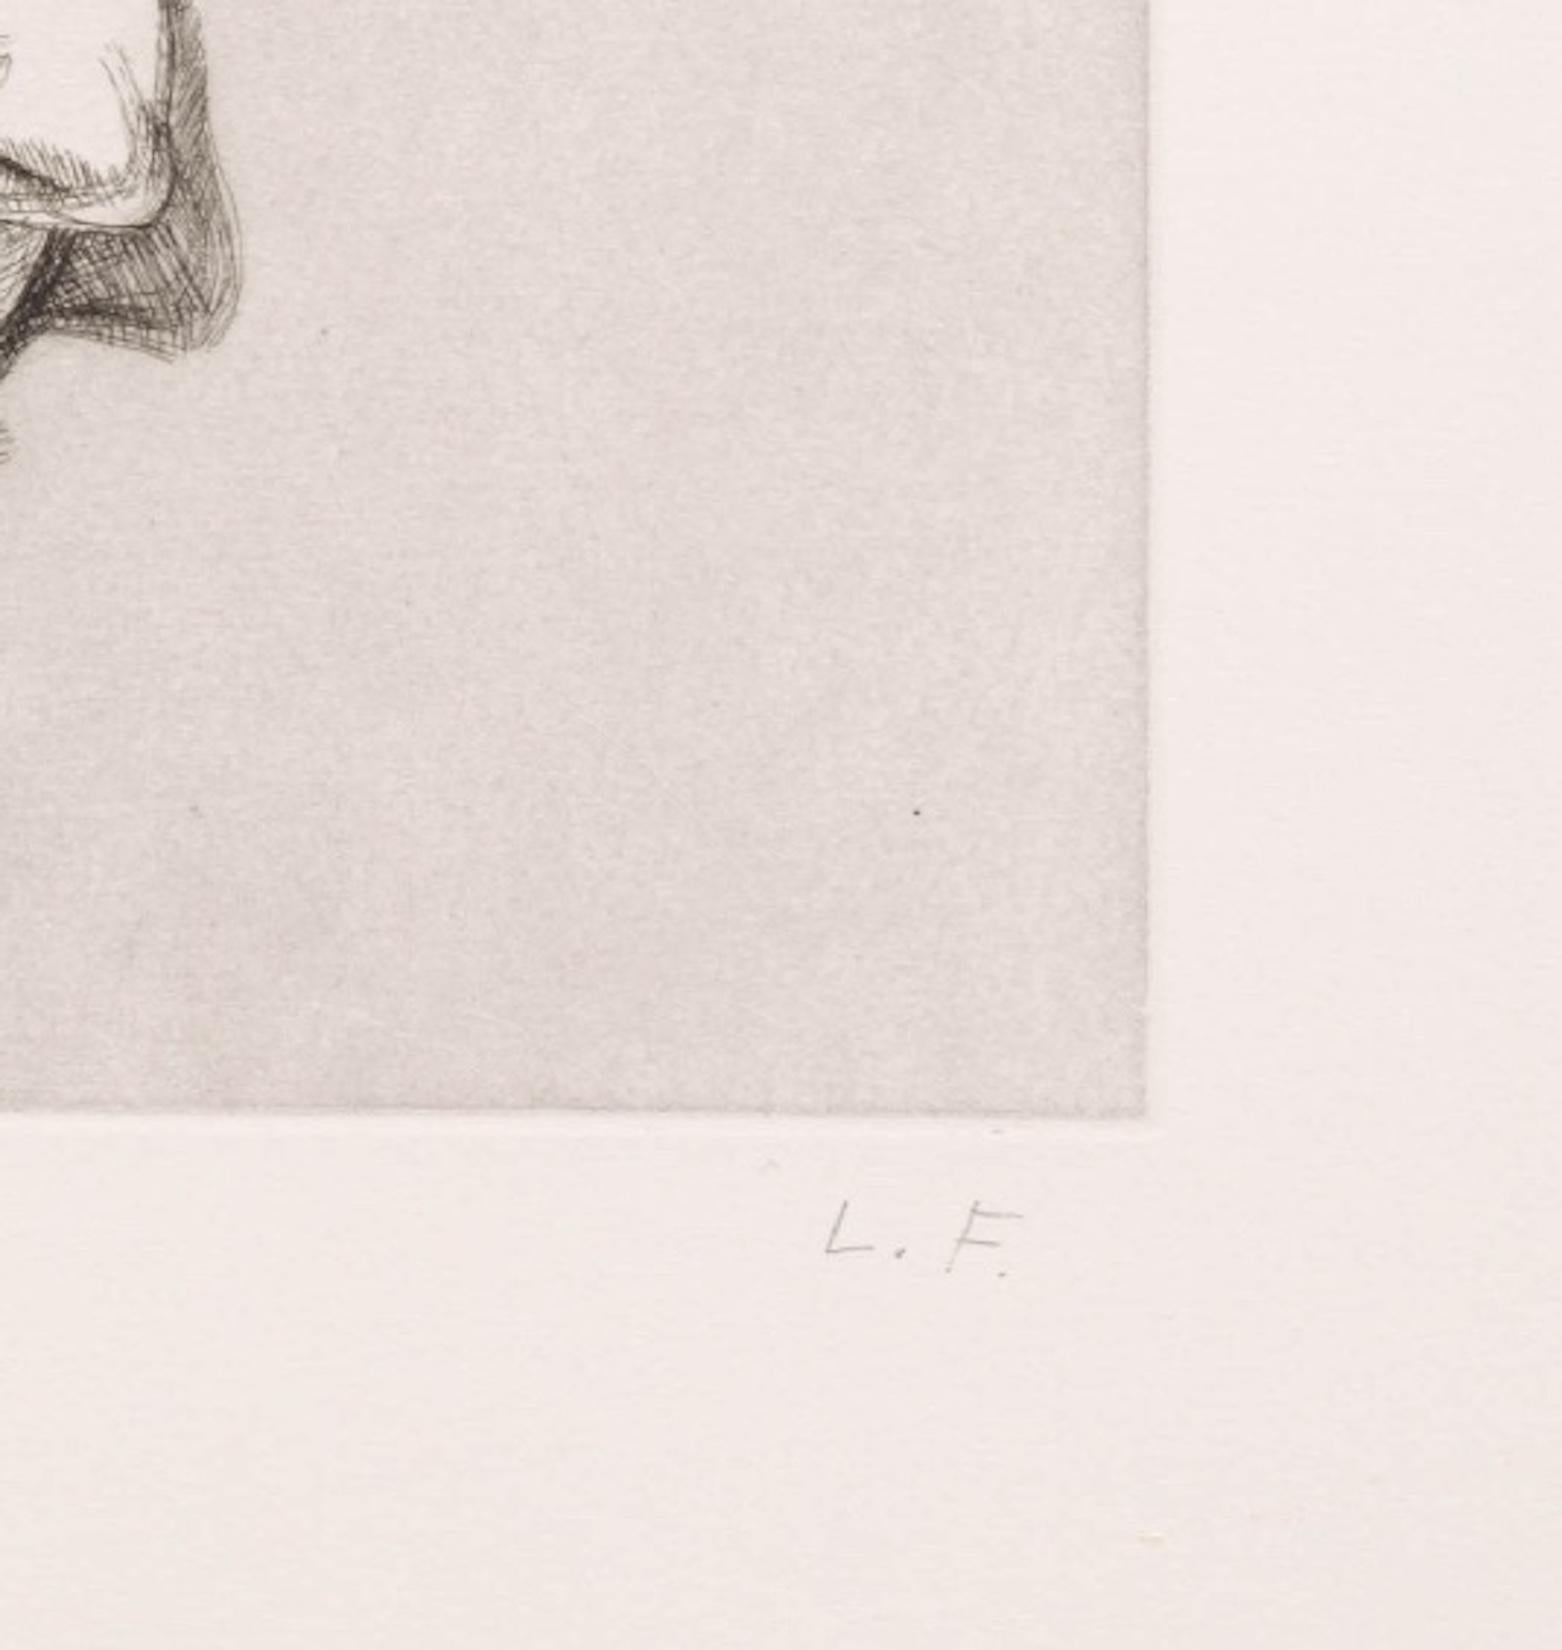 Radierung auf Somerset Satin White Papier
Ausgabe 10 von 50 + 15 AP
Platte: 11 3/8 x 11 3/8 in. (28,9 x 28,9 cm)
Blatt: 22 3/8 x 20 7/8 in. (56,8 x 53 cm)
Kat. Nr. 22, abgebildet auf S. 72